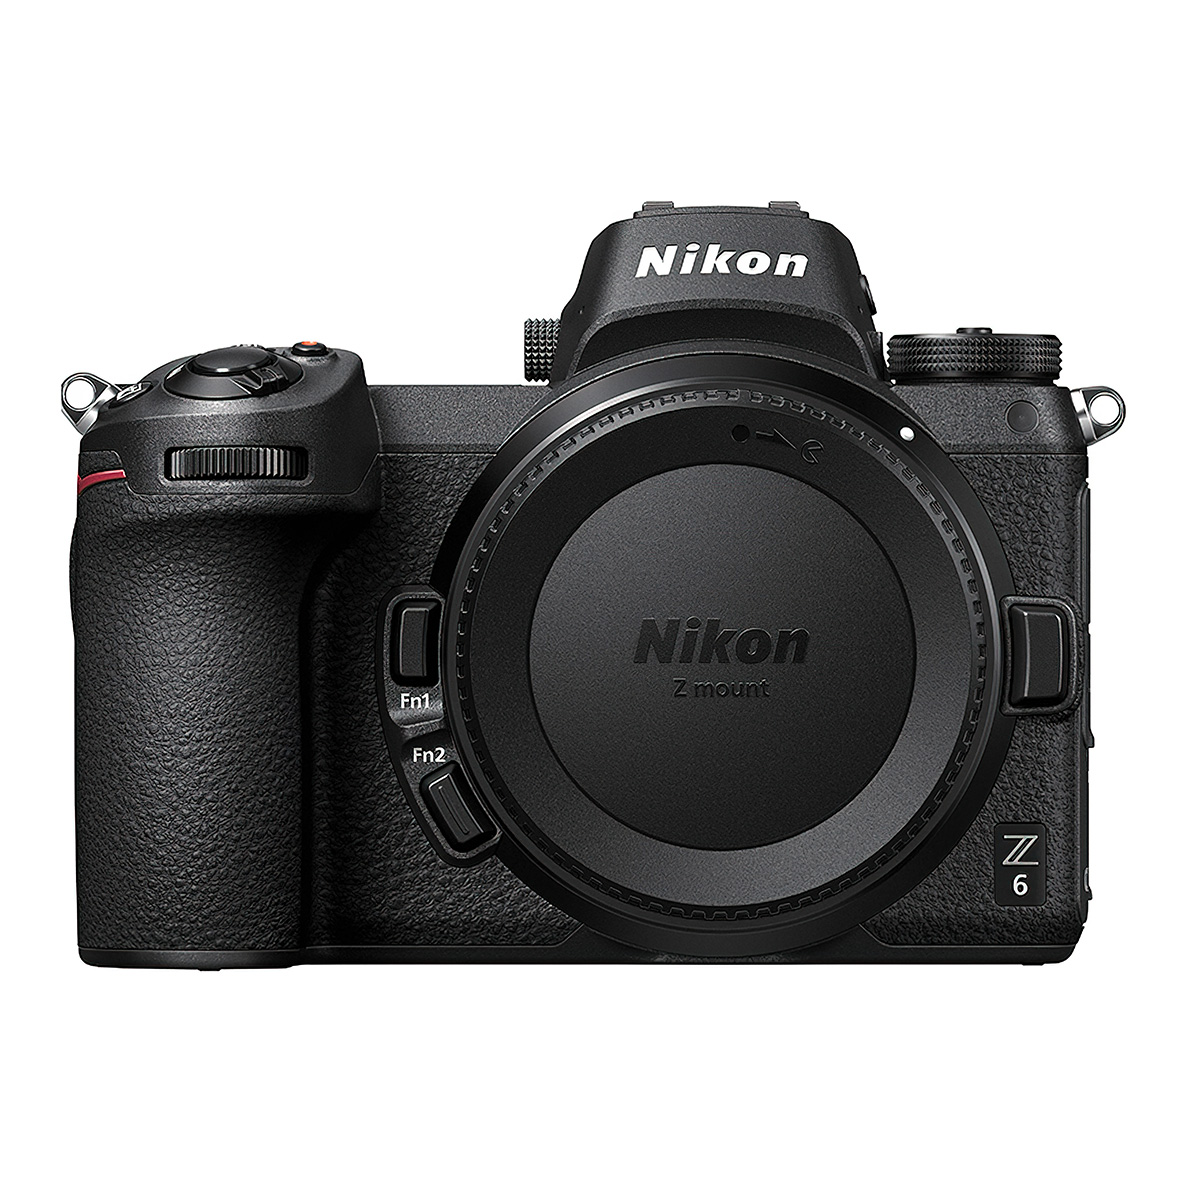 Nikon Z6 défiltré partiel LPF-1 pour l'astrophoto